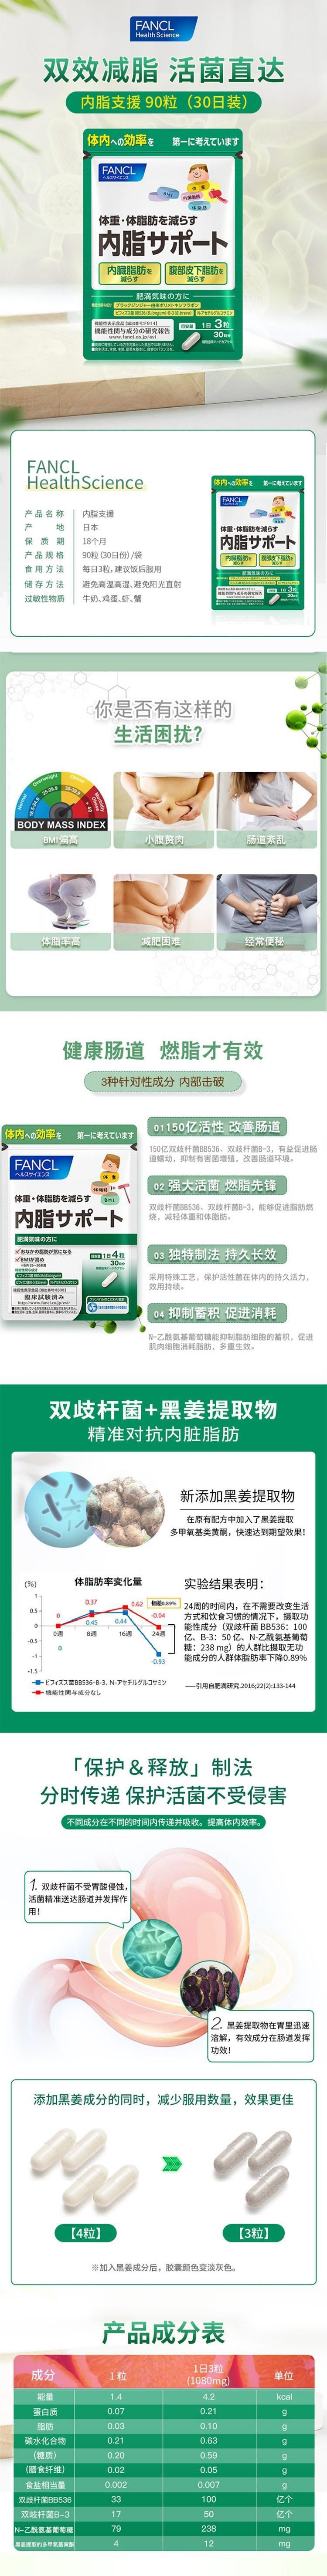 【日本直效郵件】FANCL芳珂 內脂丸 減脂體重管理膠囊 120粒30日量